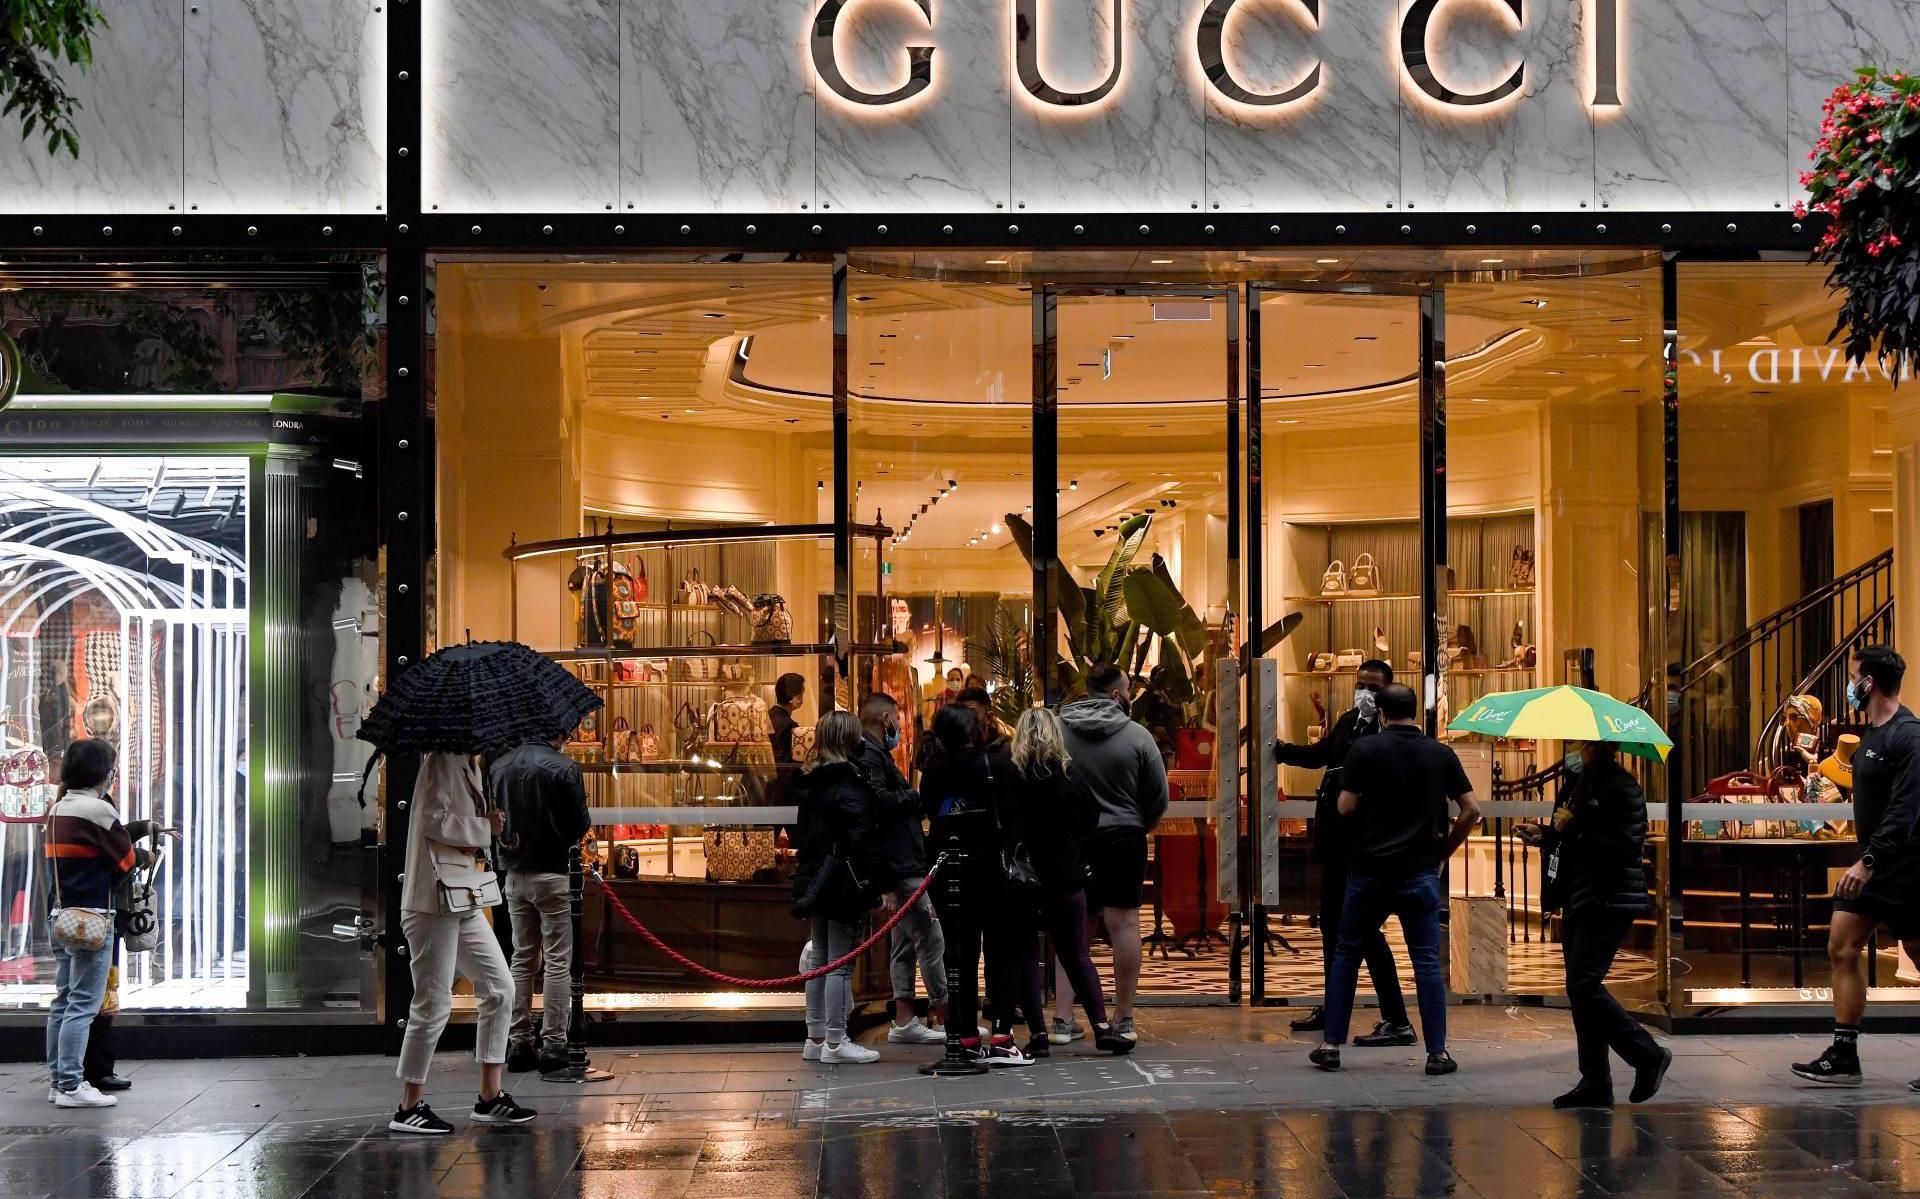 Buigen kennisgeving Achterhouden Nieuwe collectie stuwt omzet Gucci boven niveau voor coronacrisis -  Leeuwarder Courant